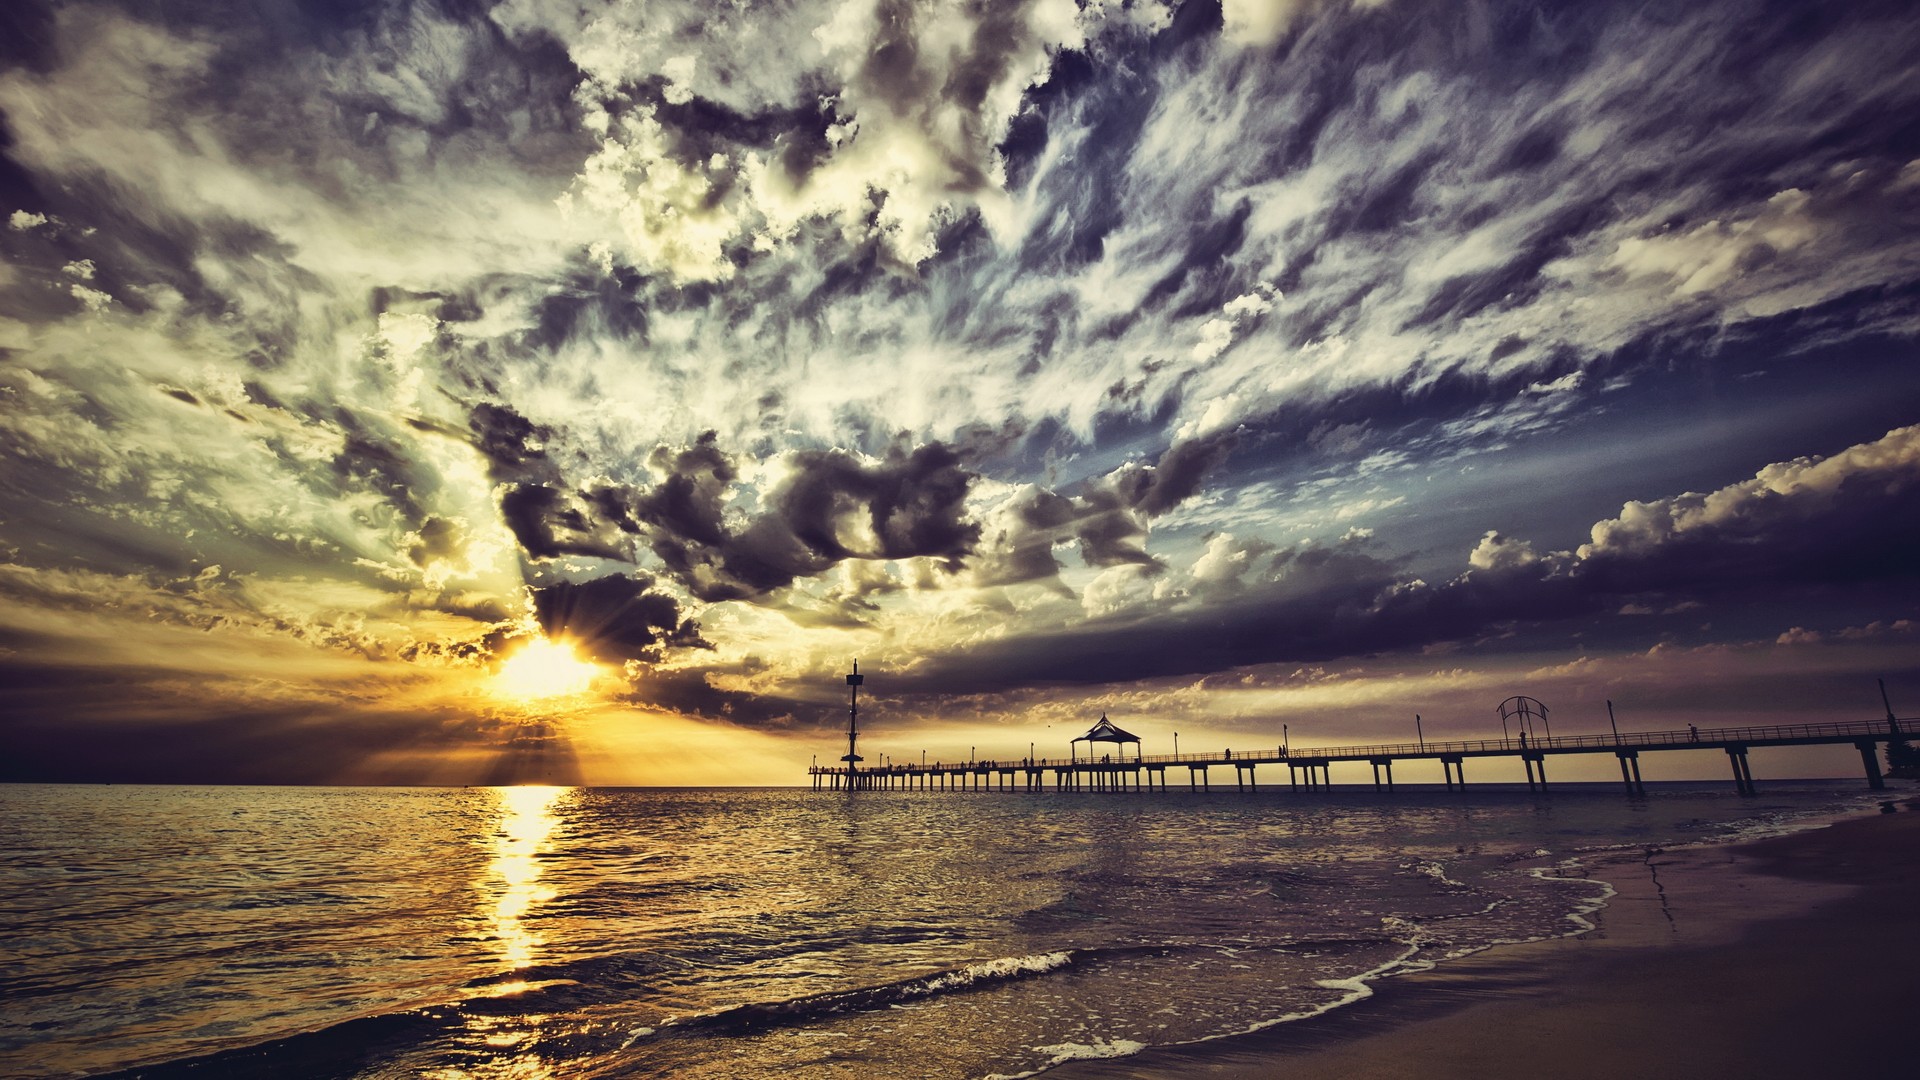 Download mobile wallpaper Sunset, Beach, Pier, Ocean, Sunlight, Cloud, Man Made for free.